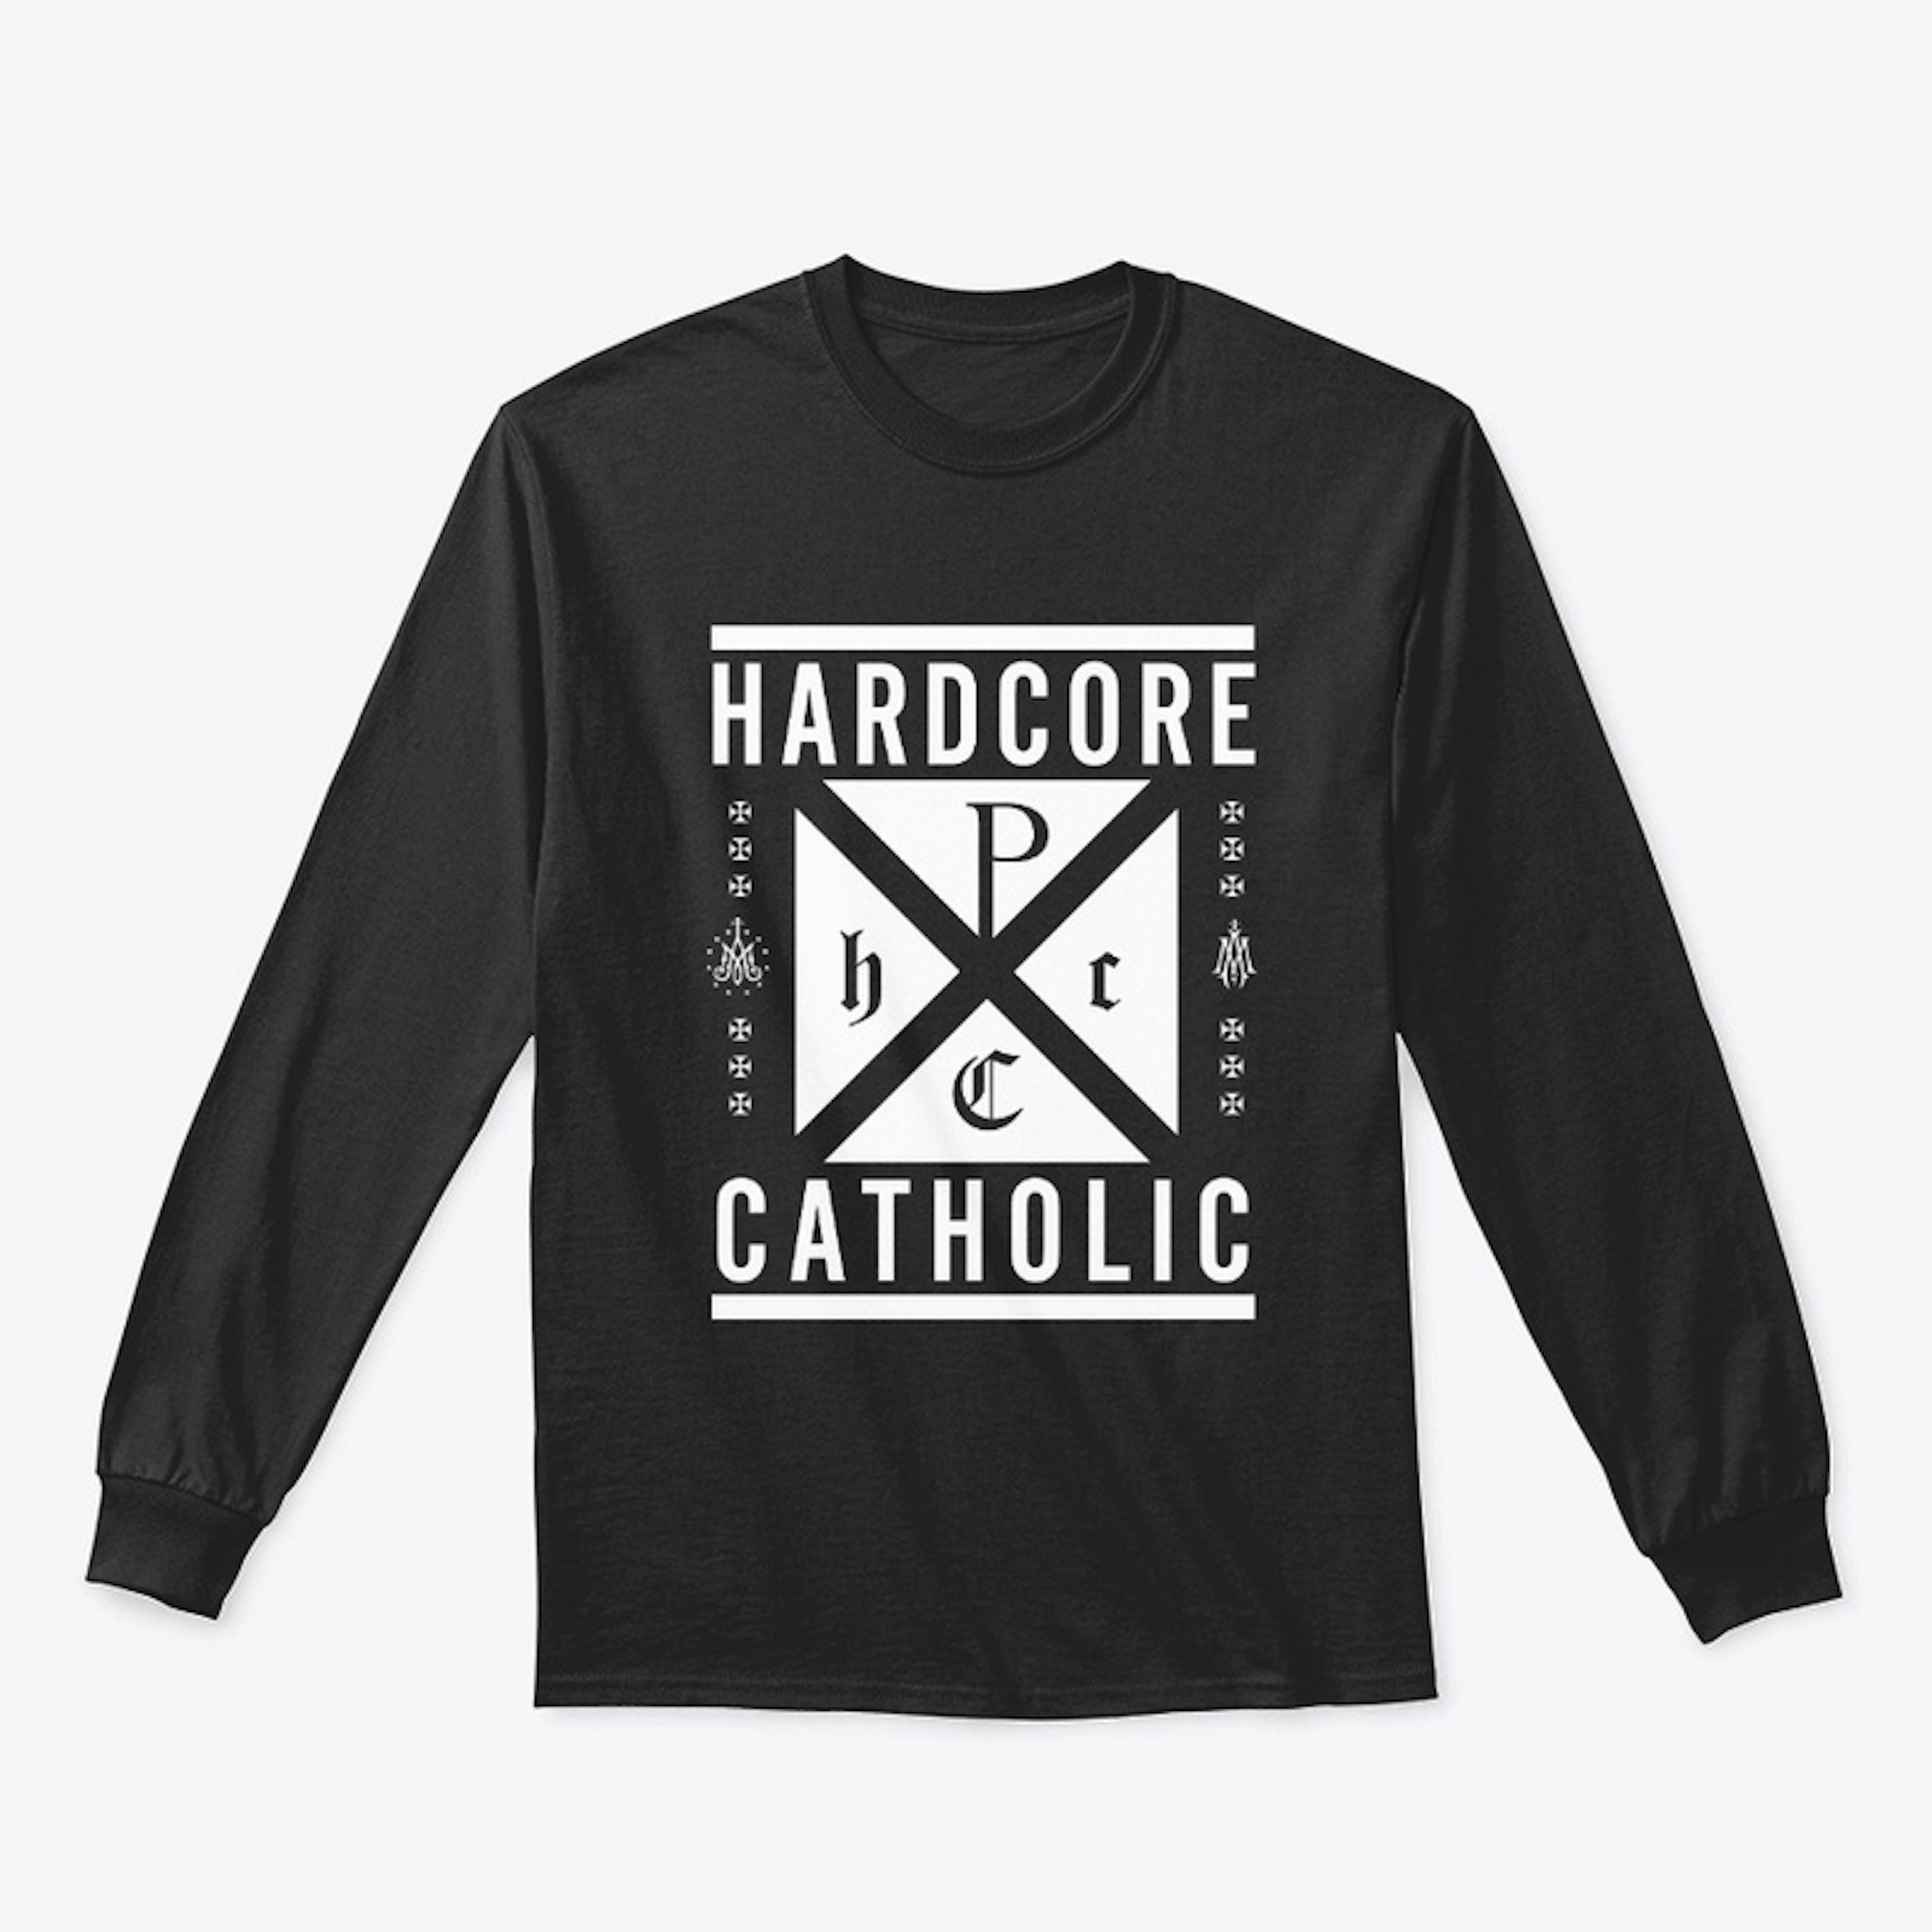 Hardcore Catholic (White on Black)